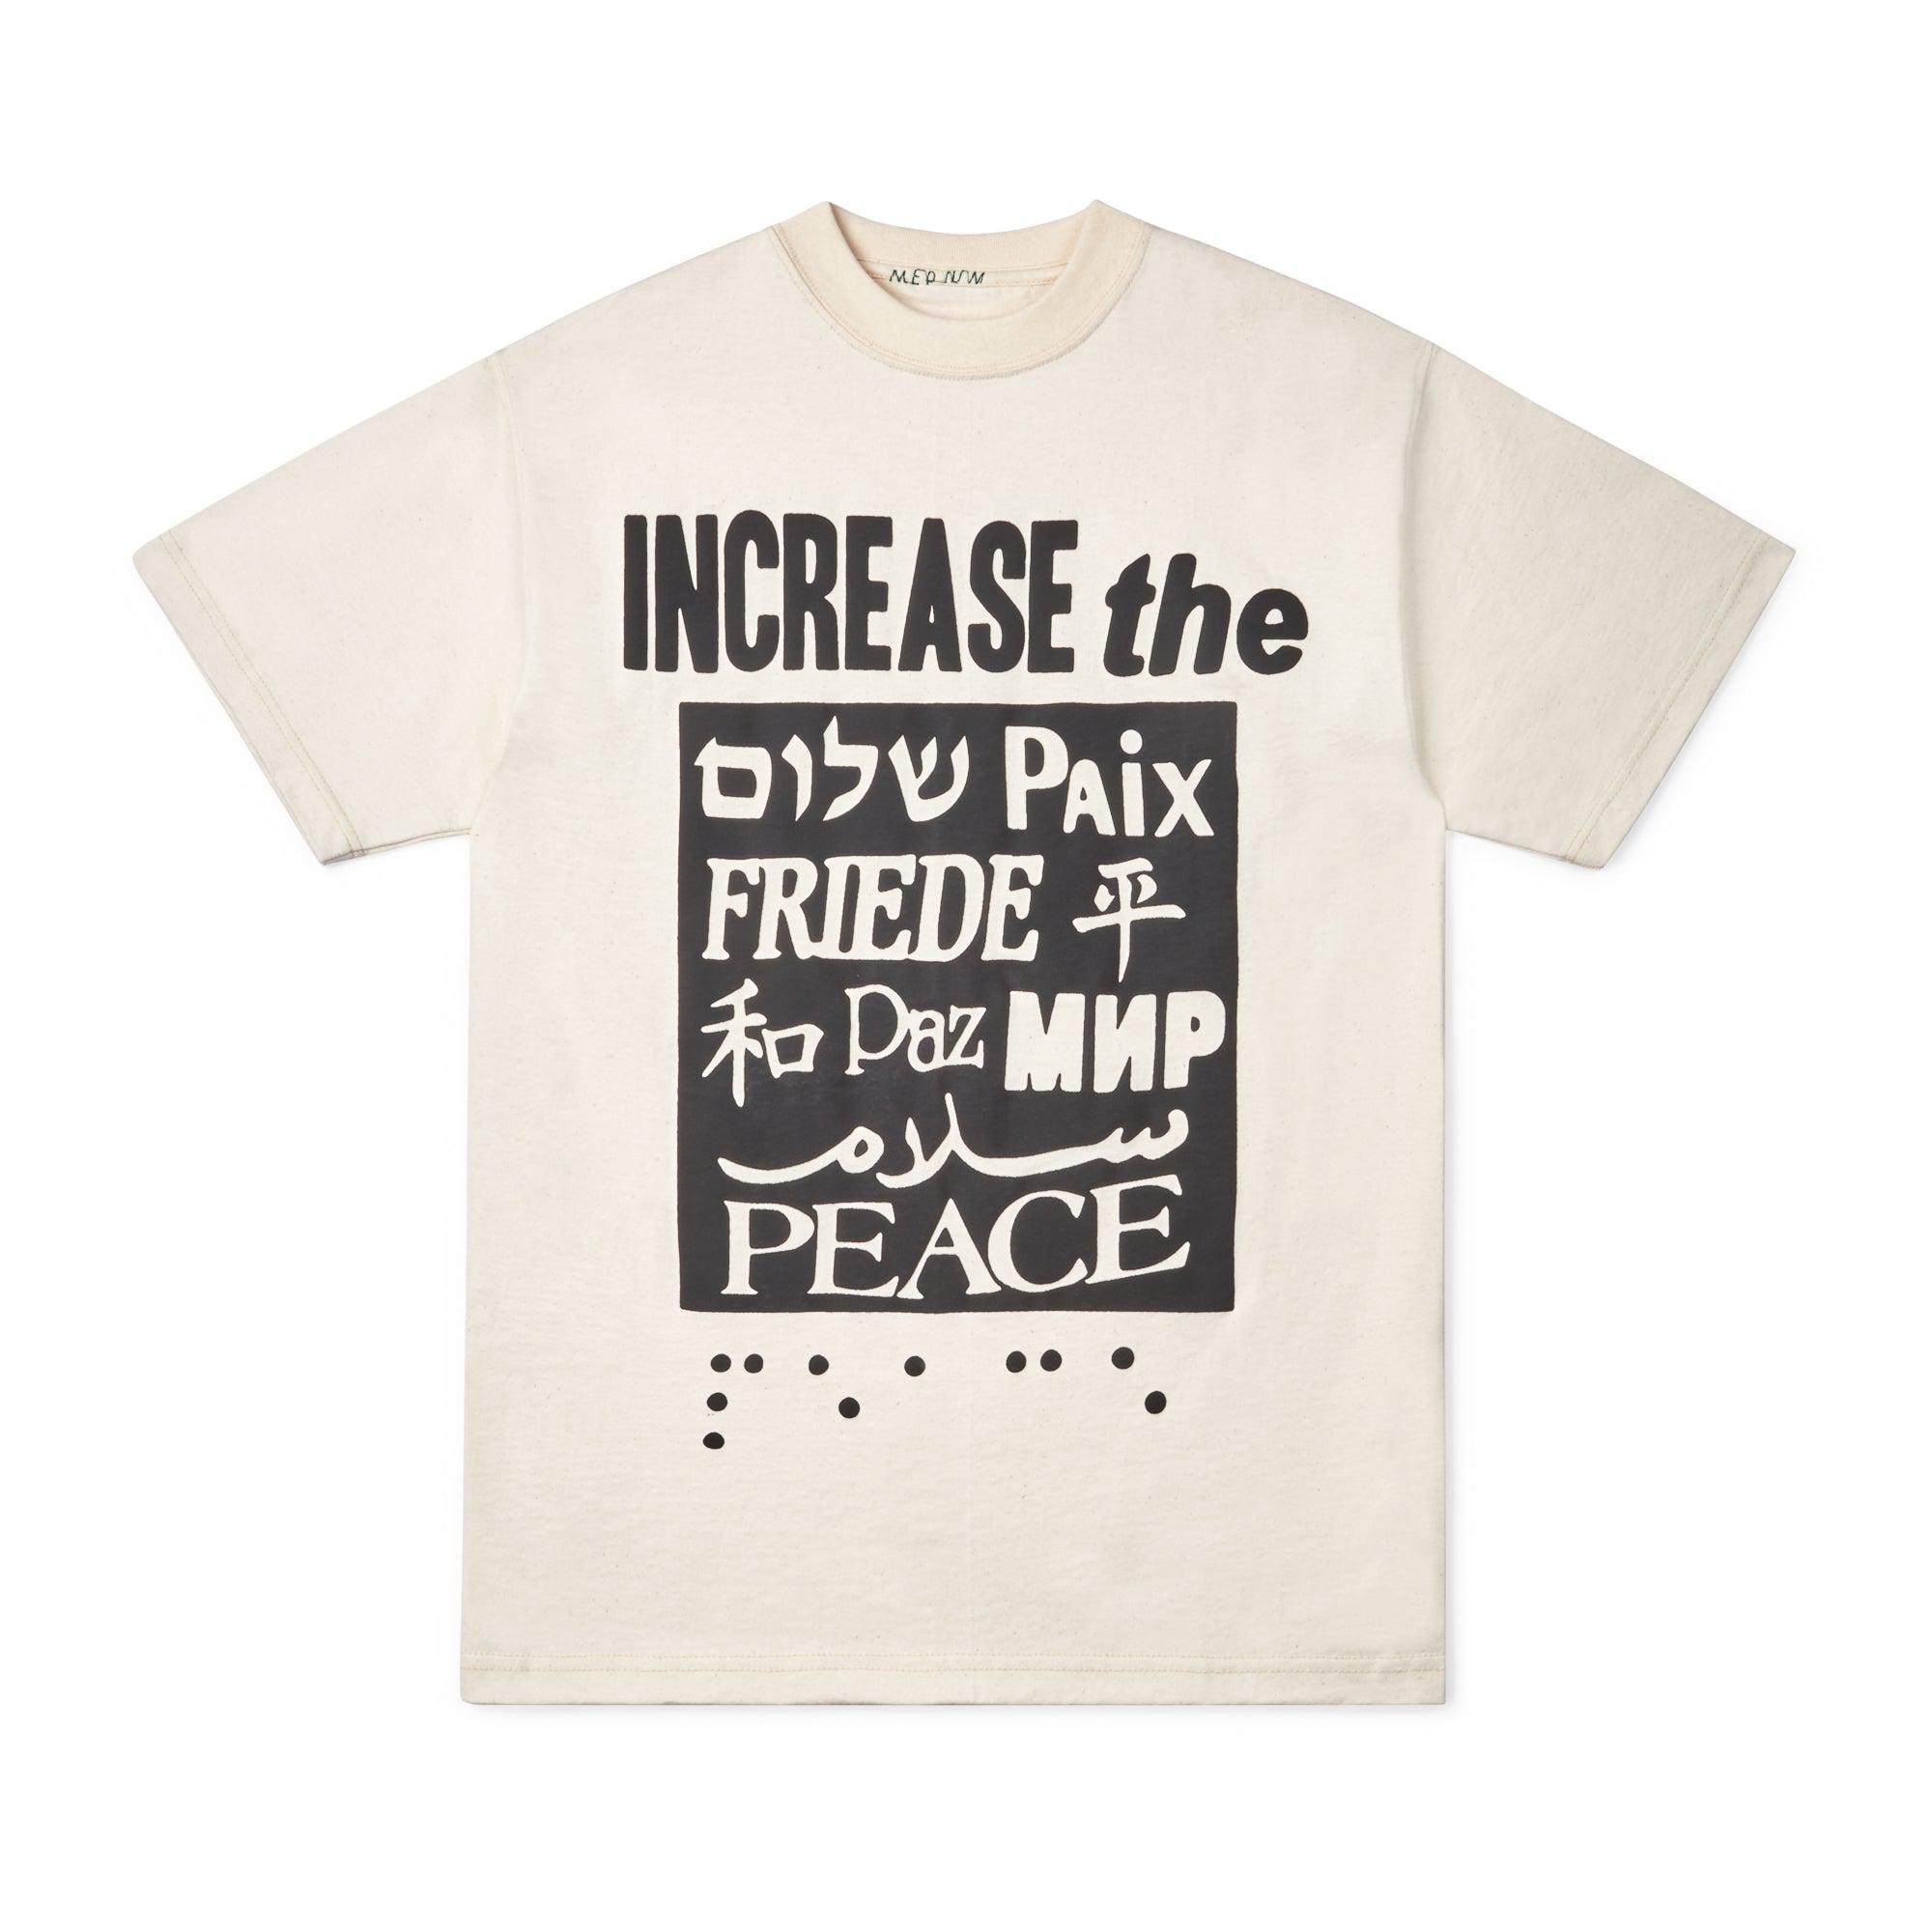 Cactus Plant Flea Market Increase The Peace T-Shirt (Mixed) by CACTUS PLANT FLEA MARKET